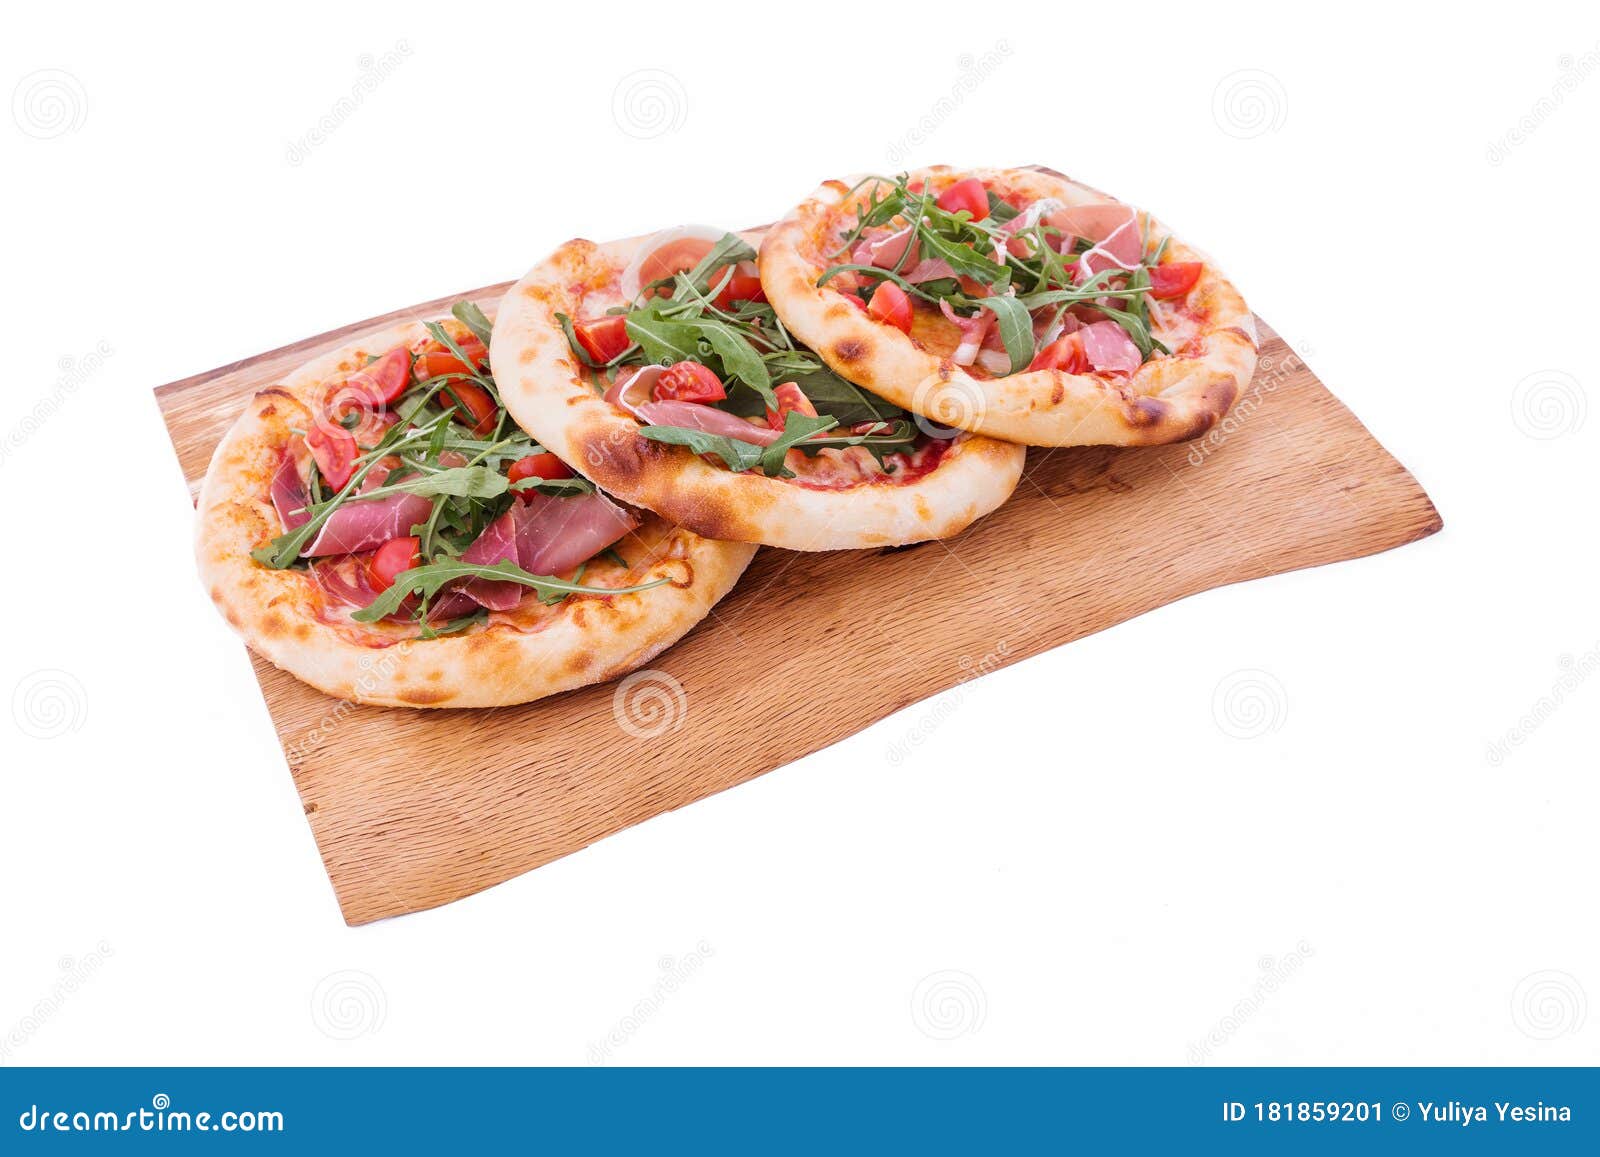 три пиццы одна с фруктами одна с овощами и соусом одна с мясом и сыром фото 117